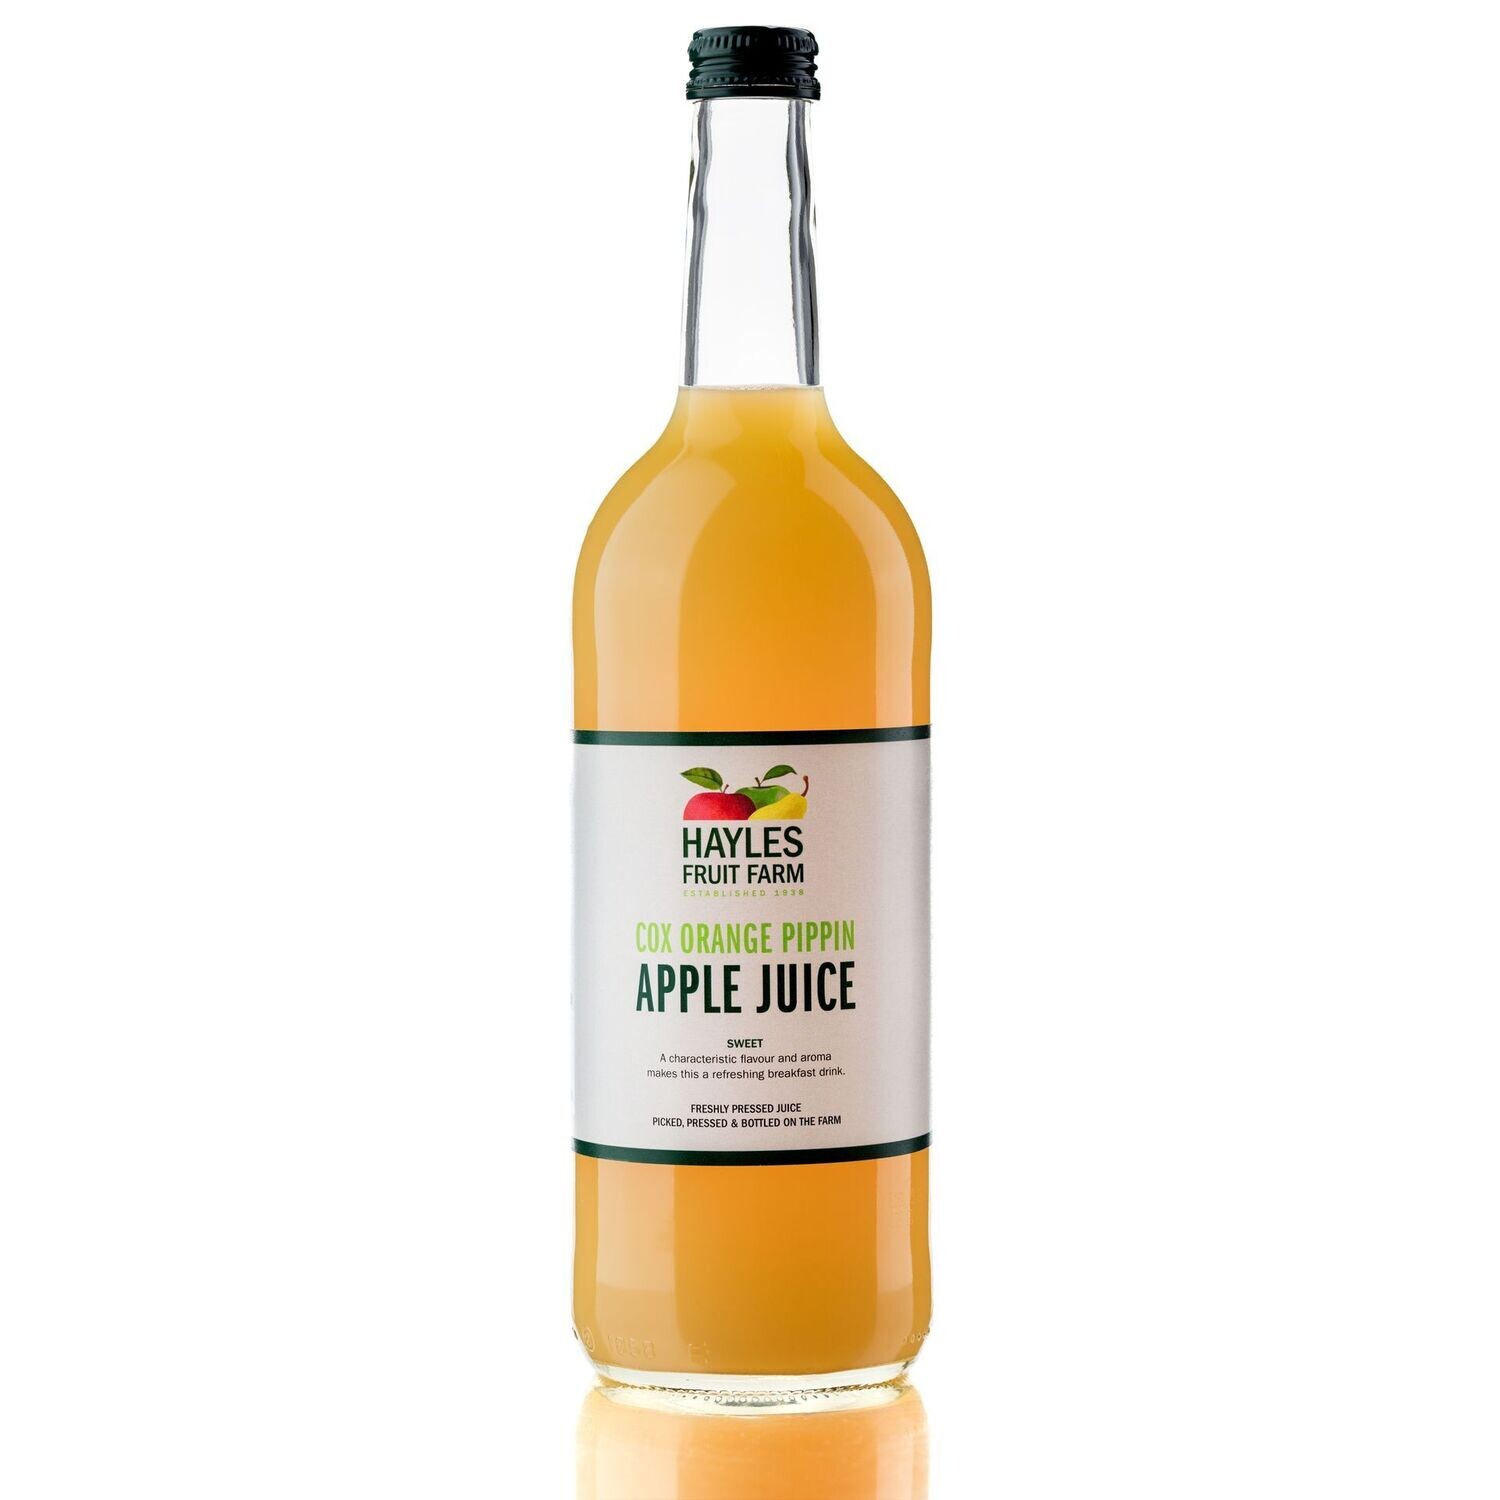 Cox Orange Pippin Apple Juice 6 x 75cl